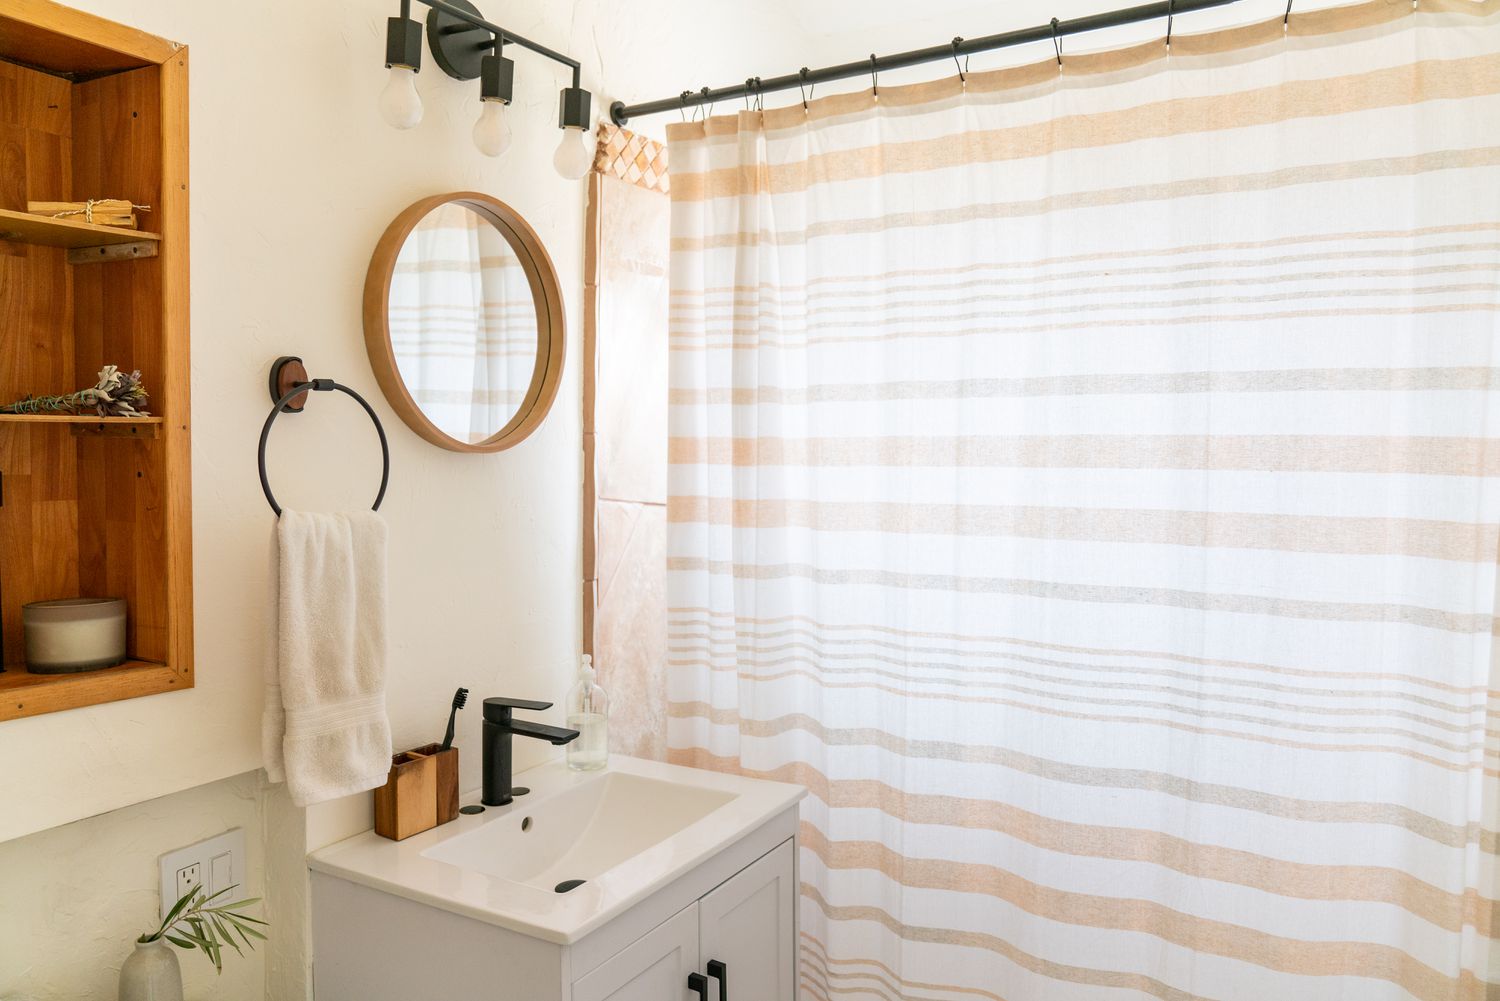 Baño pequeño con pequeño espejo redondo junto a cortina de ducha blanca y bronceada